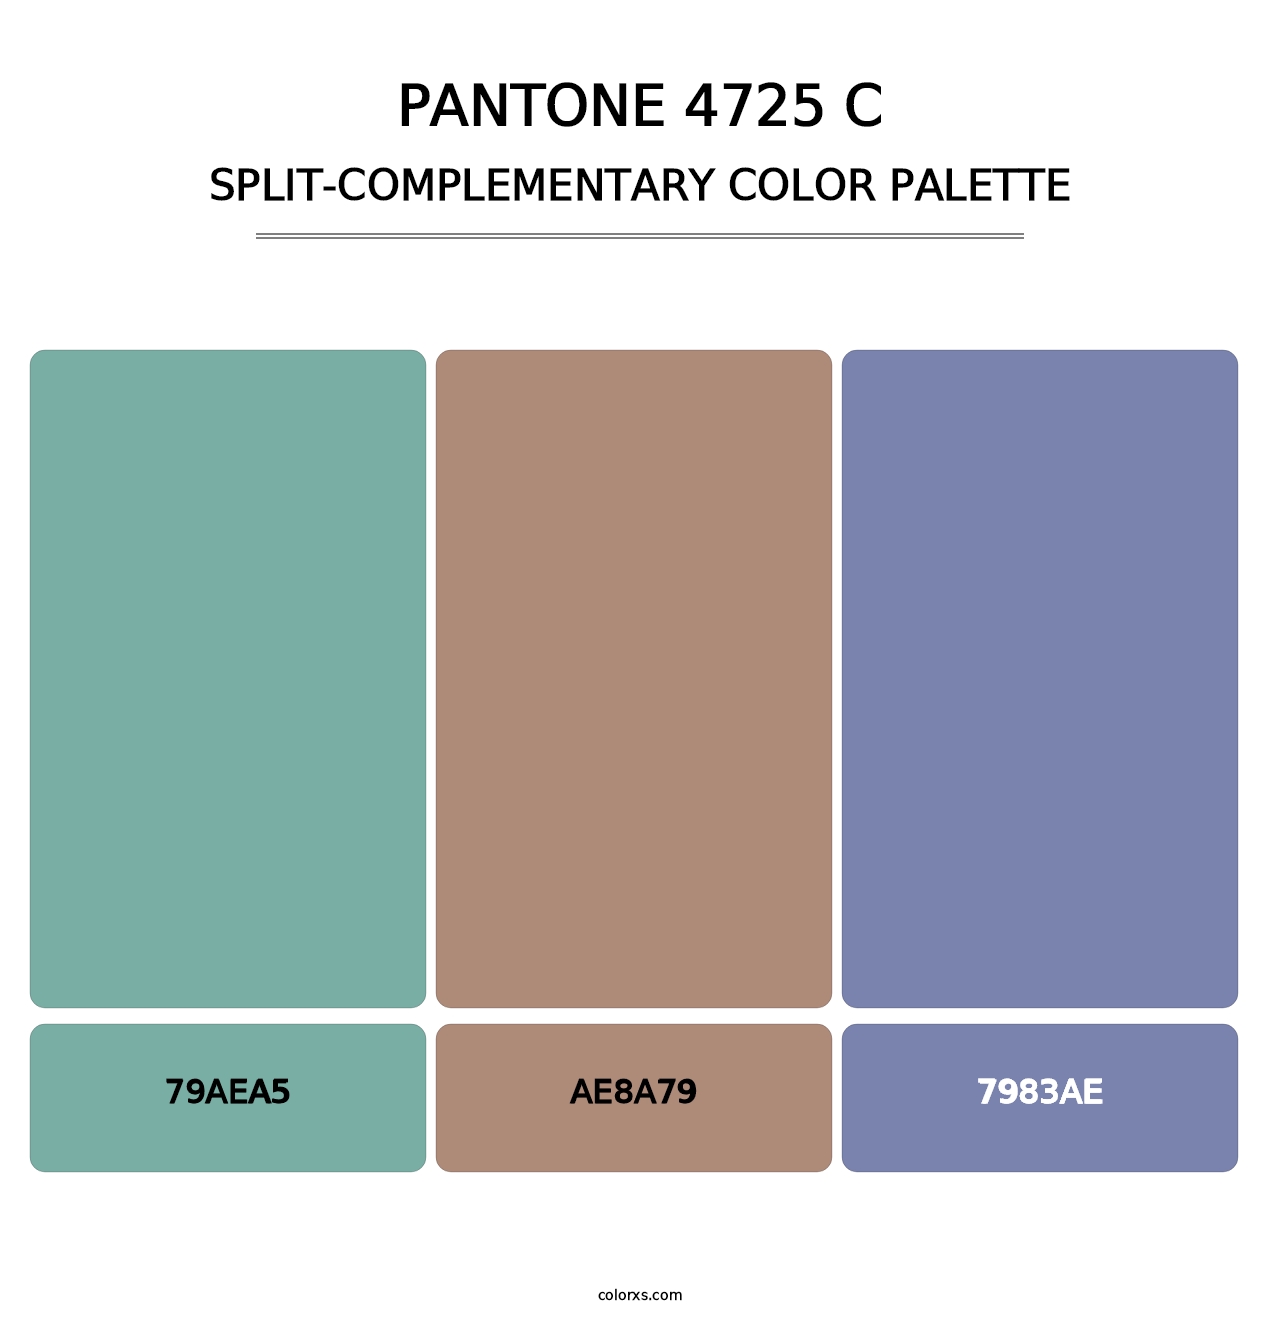 PANTONE 4725 C - Split-Complementary Color Palette